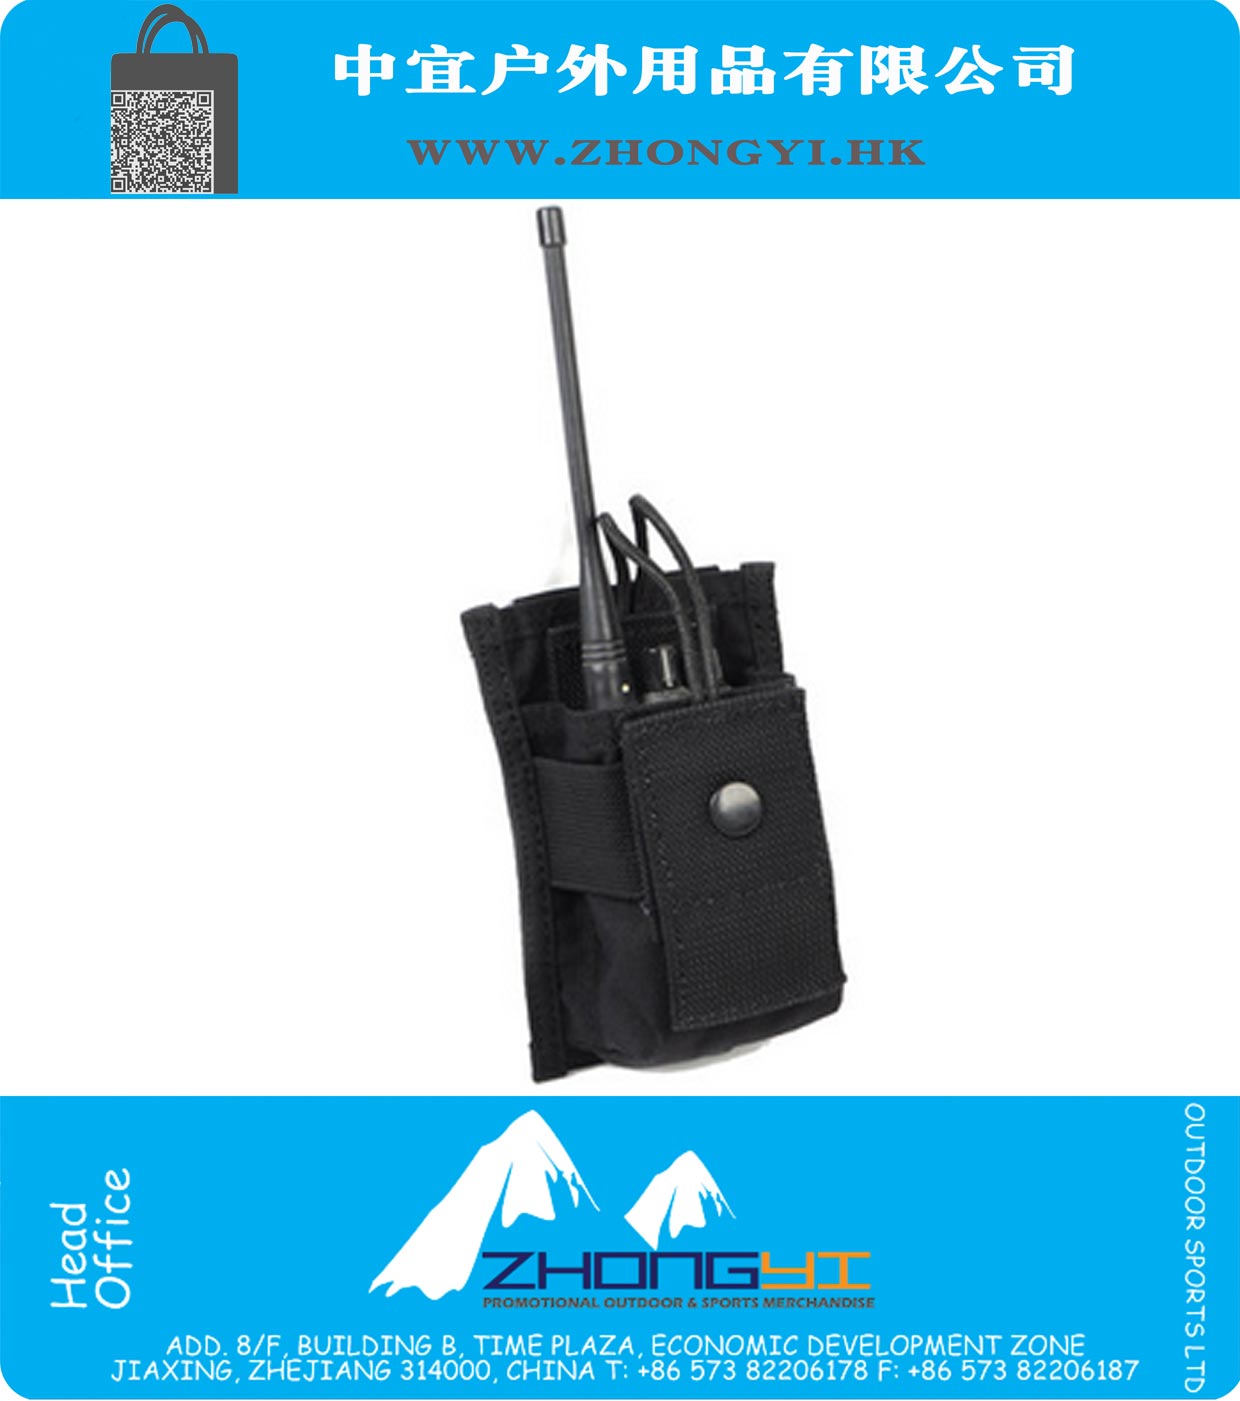 1000D Tactical Molle Radio Pouch Waterdichte Nylon Tactical Gear Gereedschap tas voor Outdoor Hiking Camping Wargame